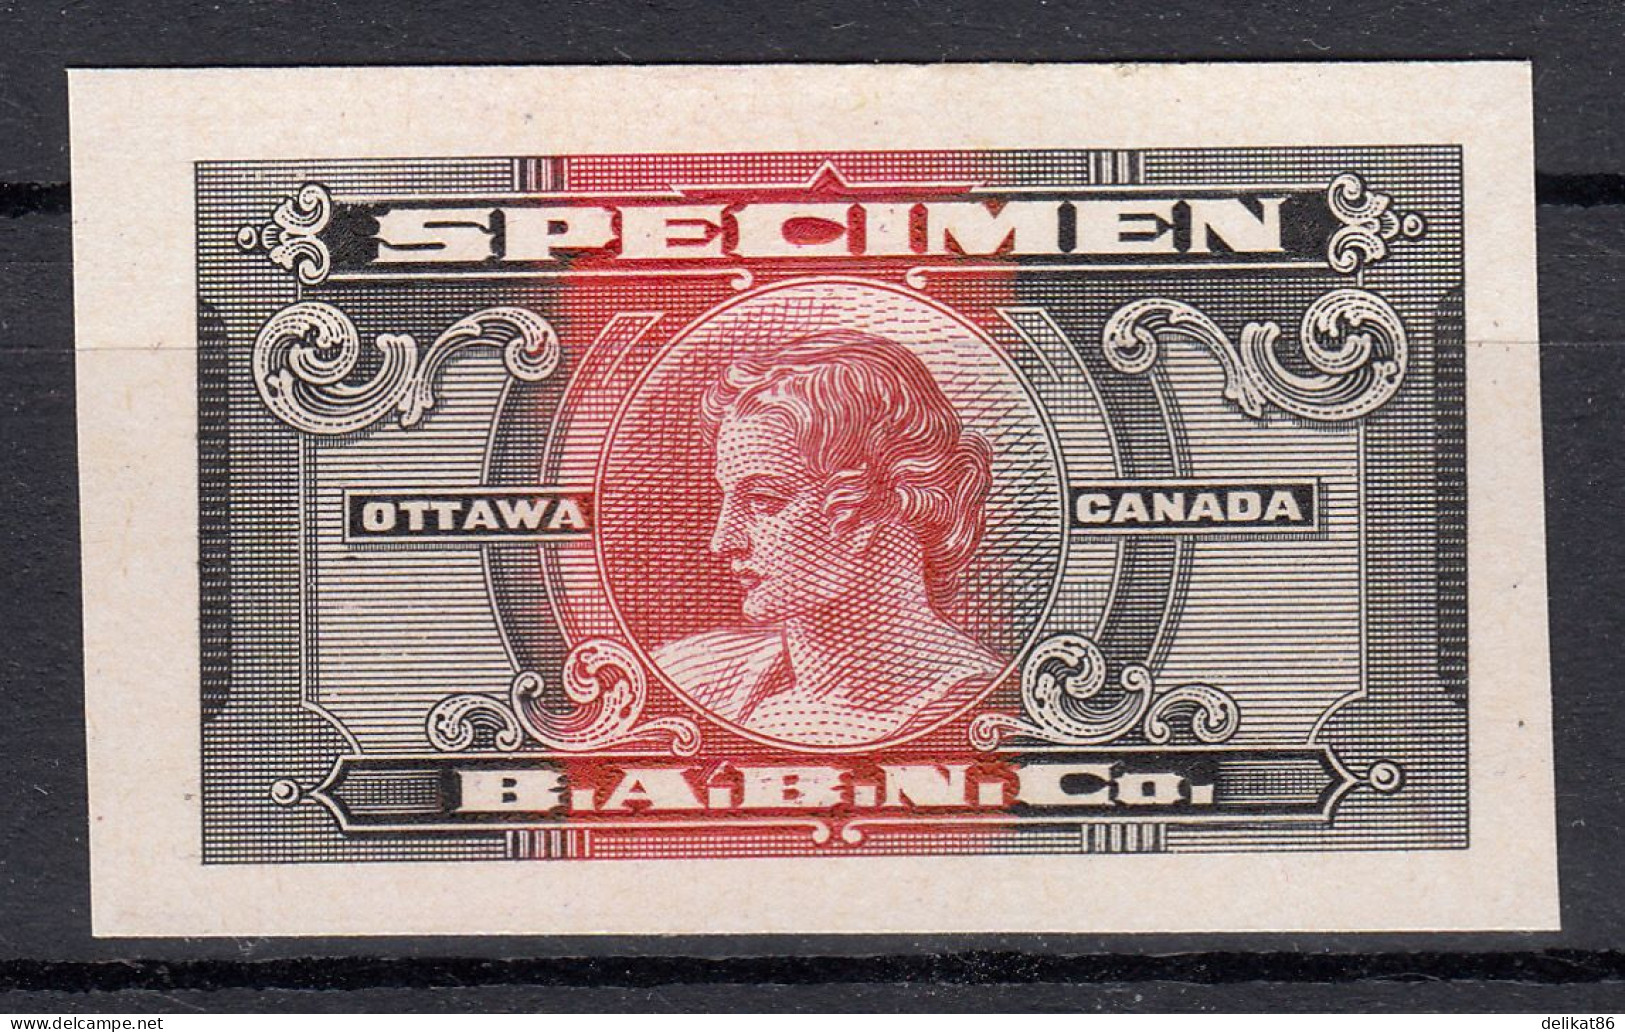 Probedruck, Test-Stamp, Specimen B.A.B.N.Co-Ottawa Kanada 1935 - Probe- Und Nachdrucke